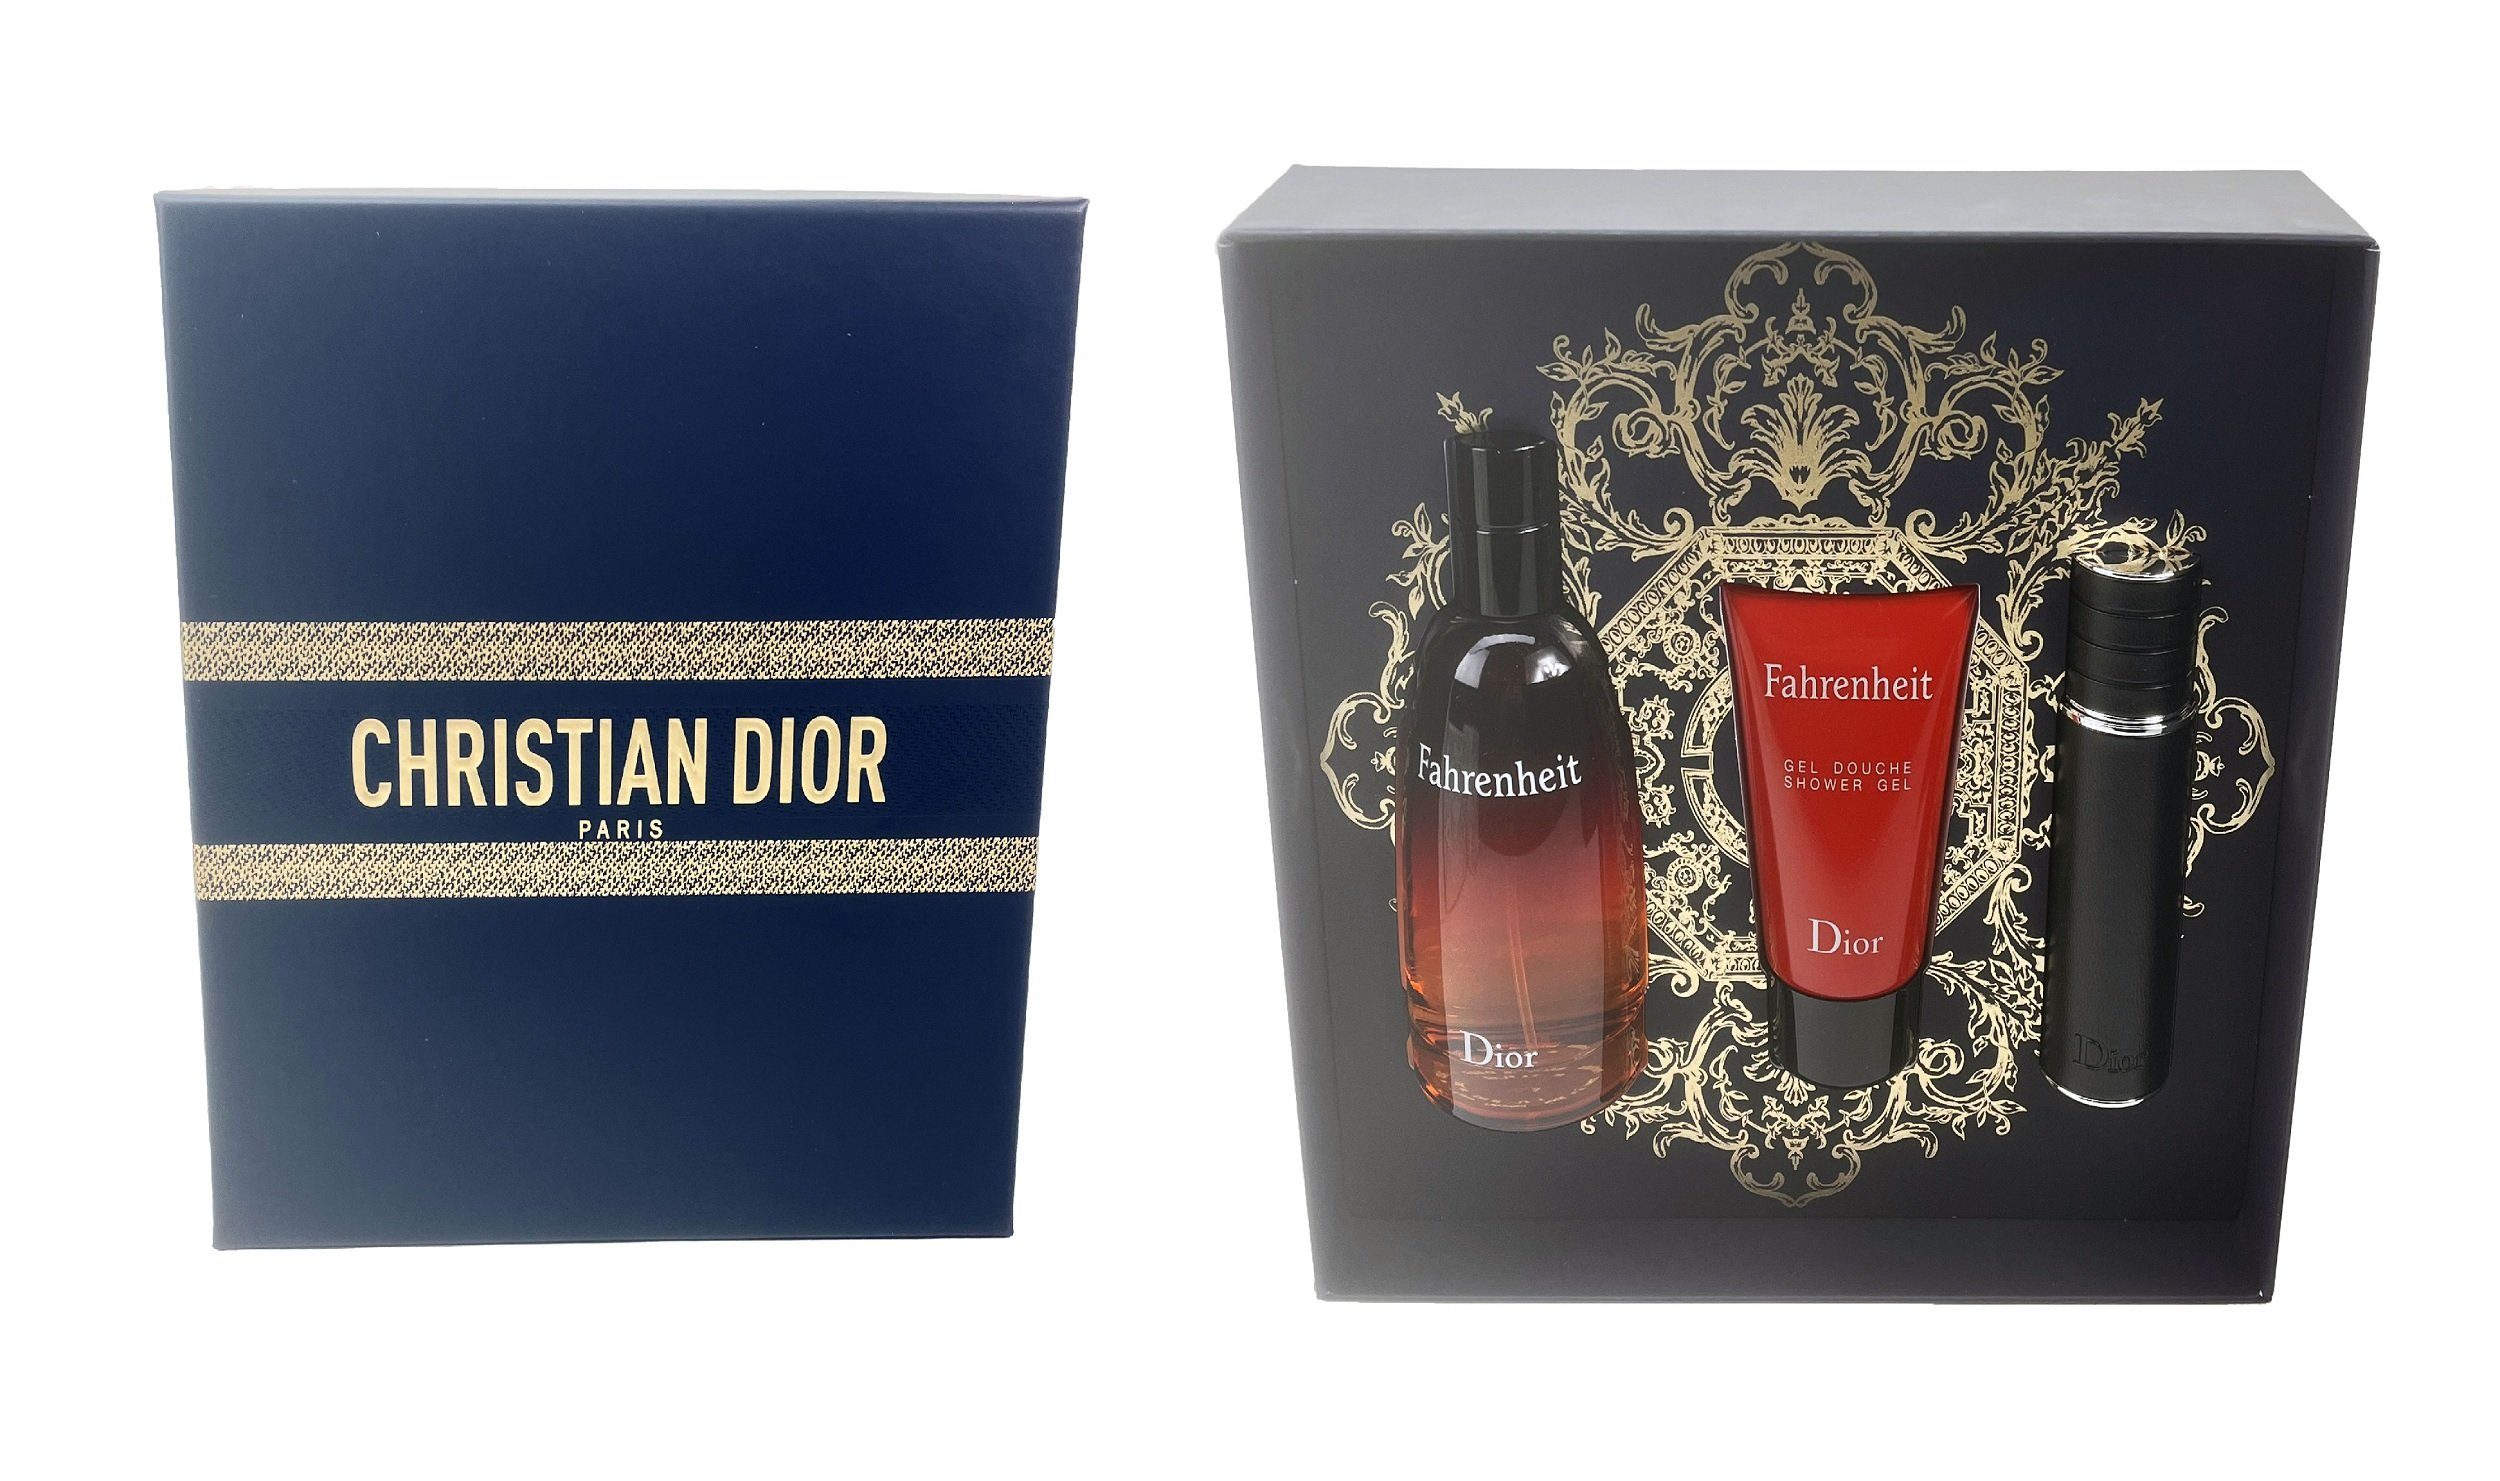 Christian Geschenkset, Duft-Set Fahrenheit Weihnachtsgeschenk Dior 3-tlg., Set Dior